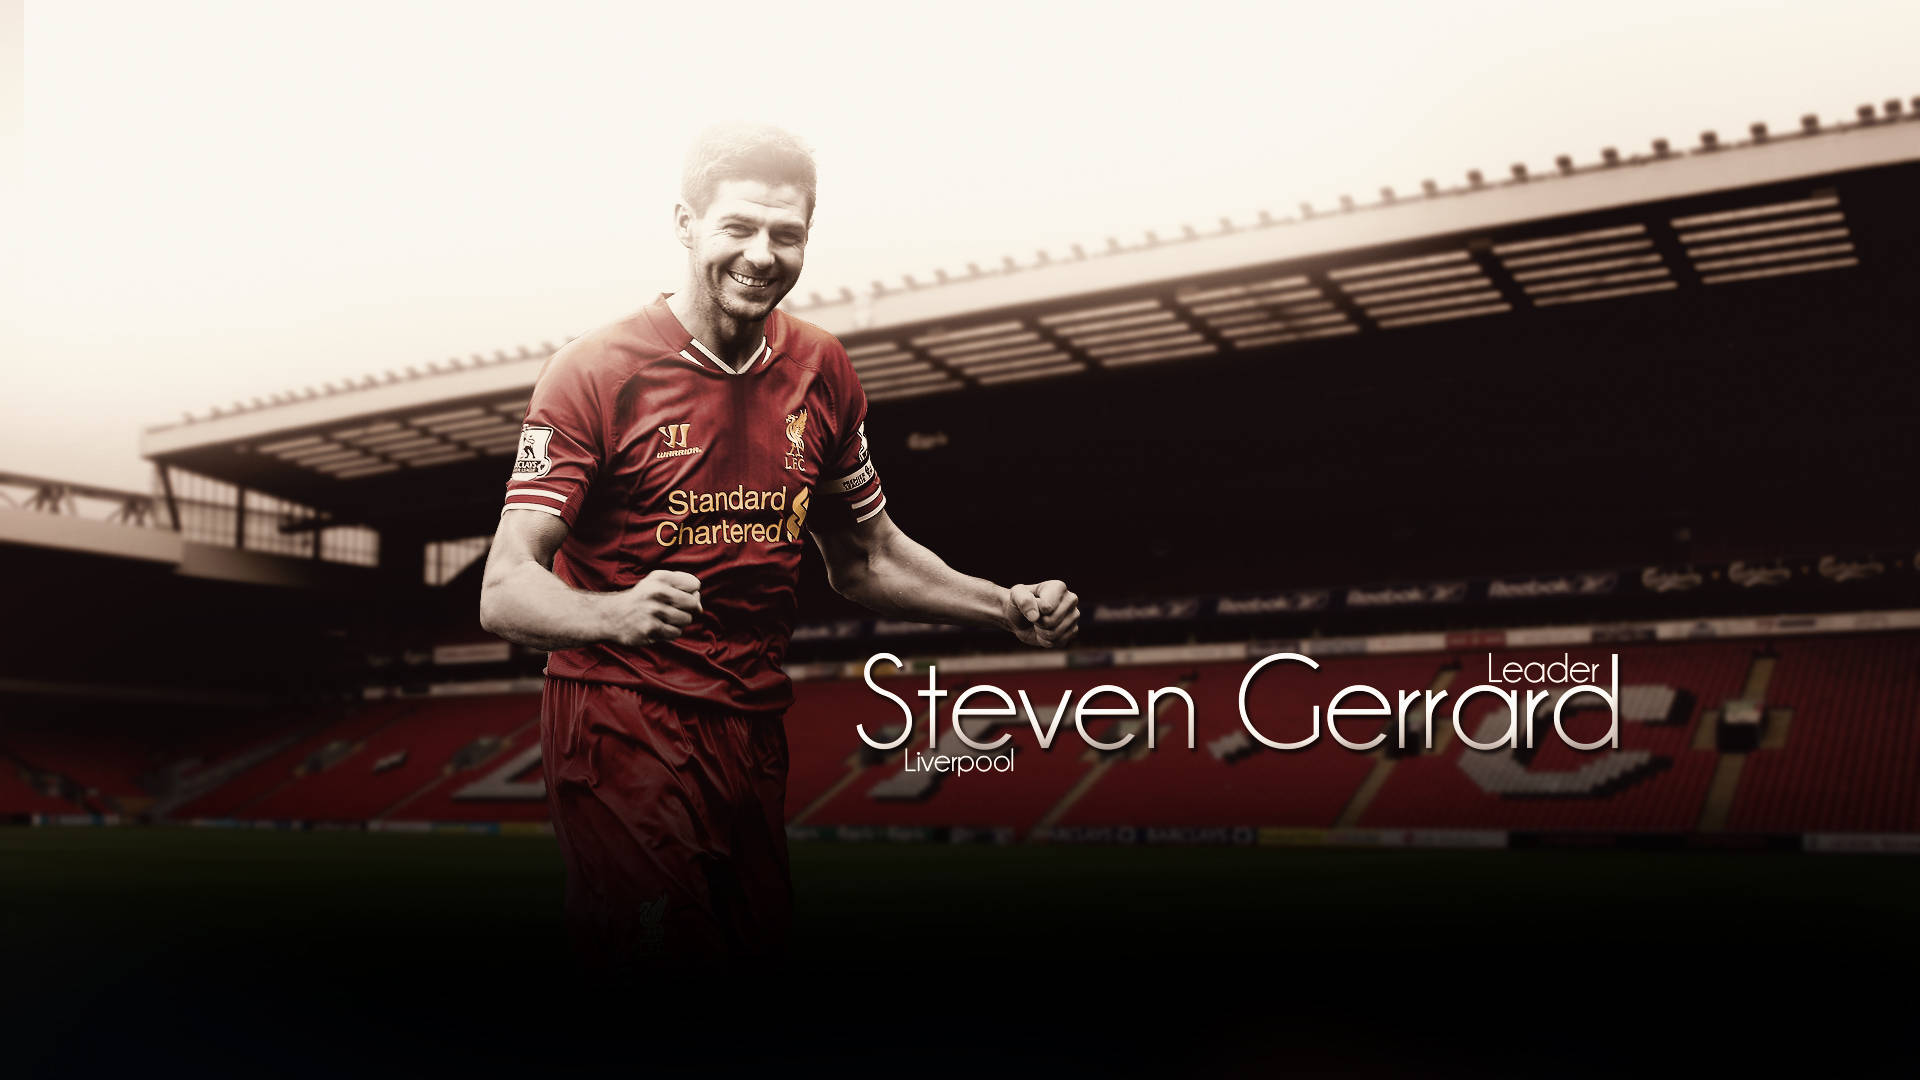 Steven Gerrard Liverpool Leader Background